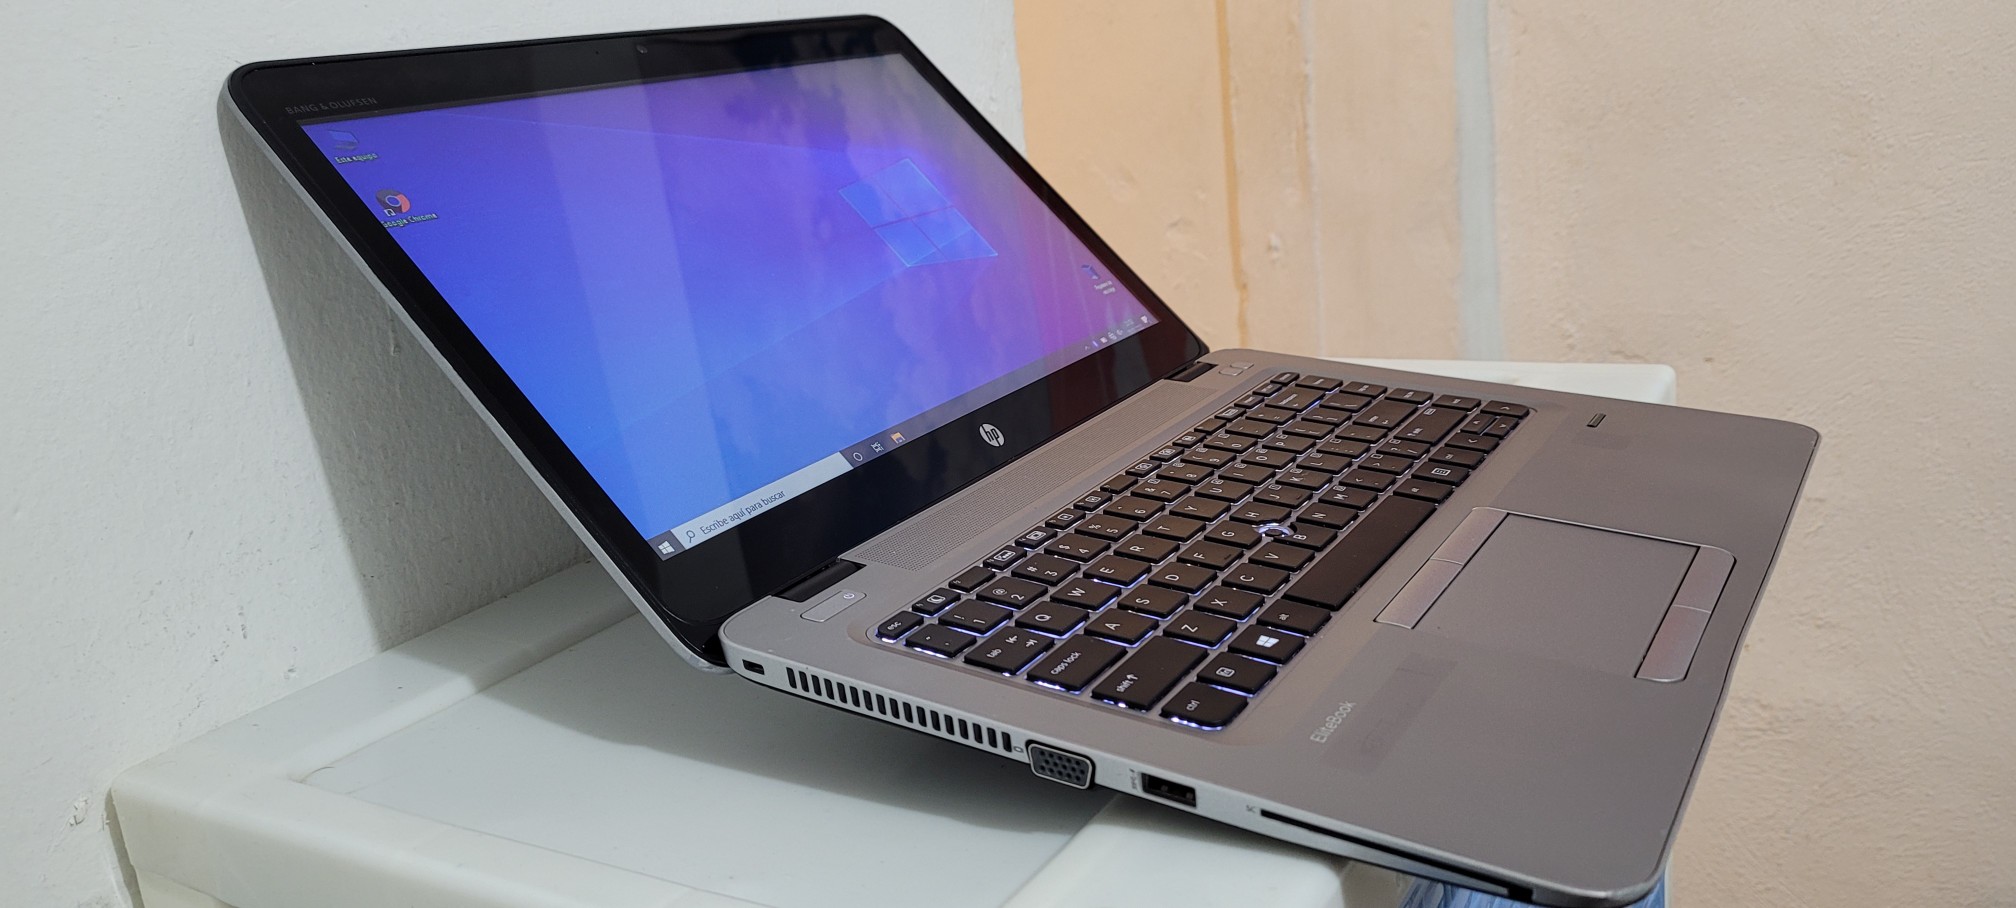 computadoras y laptops - Laptop 840 14 Core i5 7ma Gen Ram 8gb ddr4 Disco 128gb Y 320gb full 1